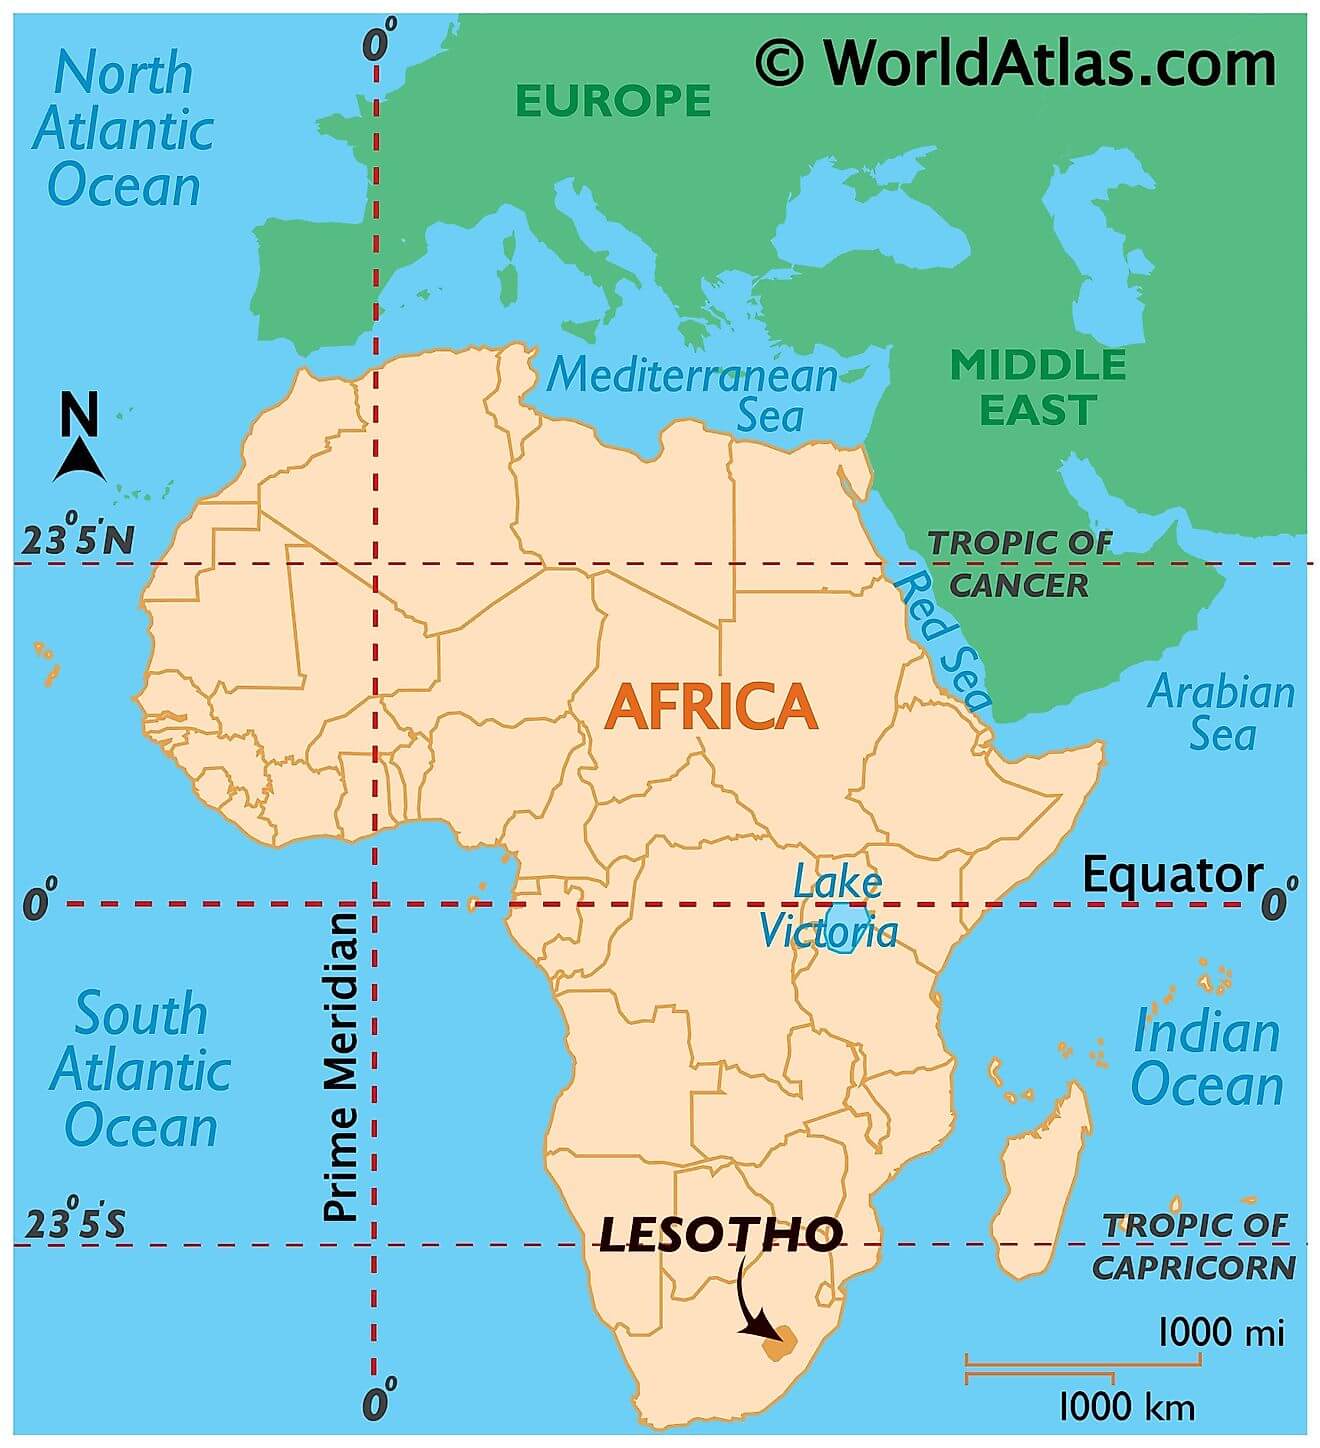 Lesotho ở đâu?